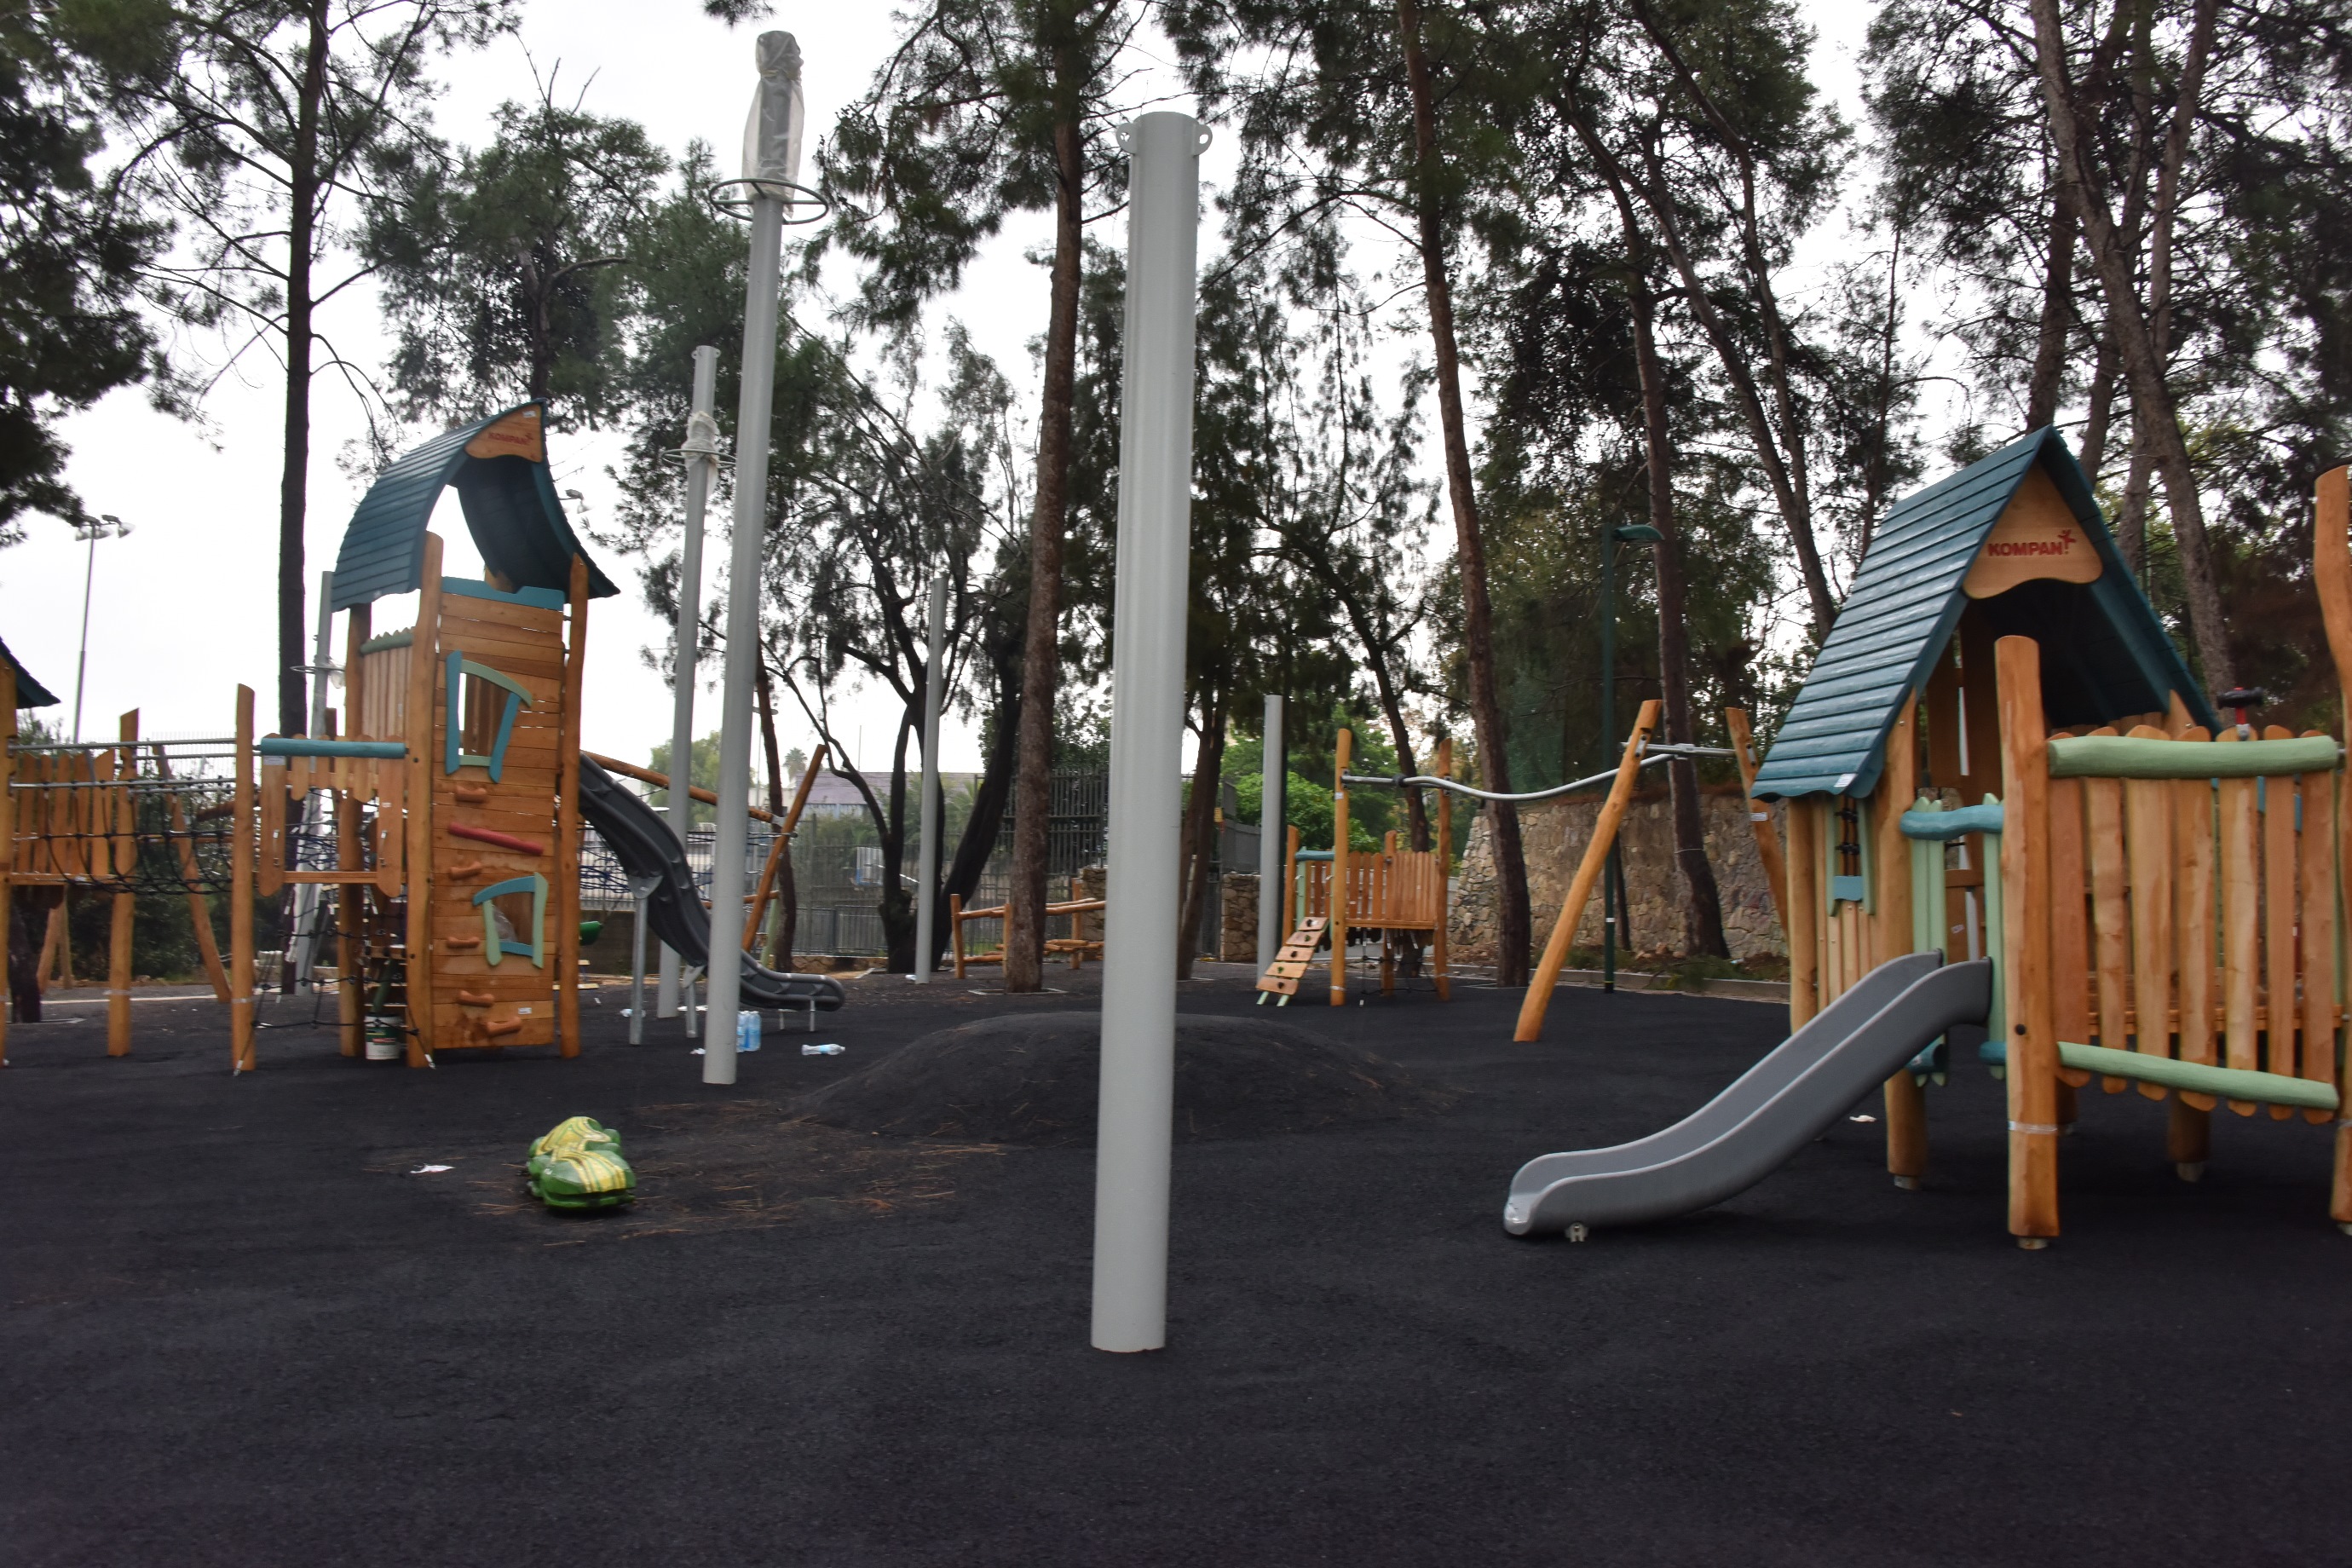 גן משחקים ציבורי חדש ברחוב חנקין